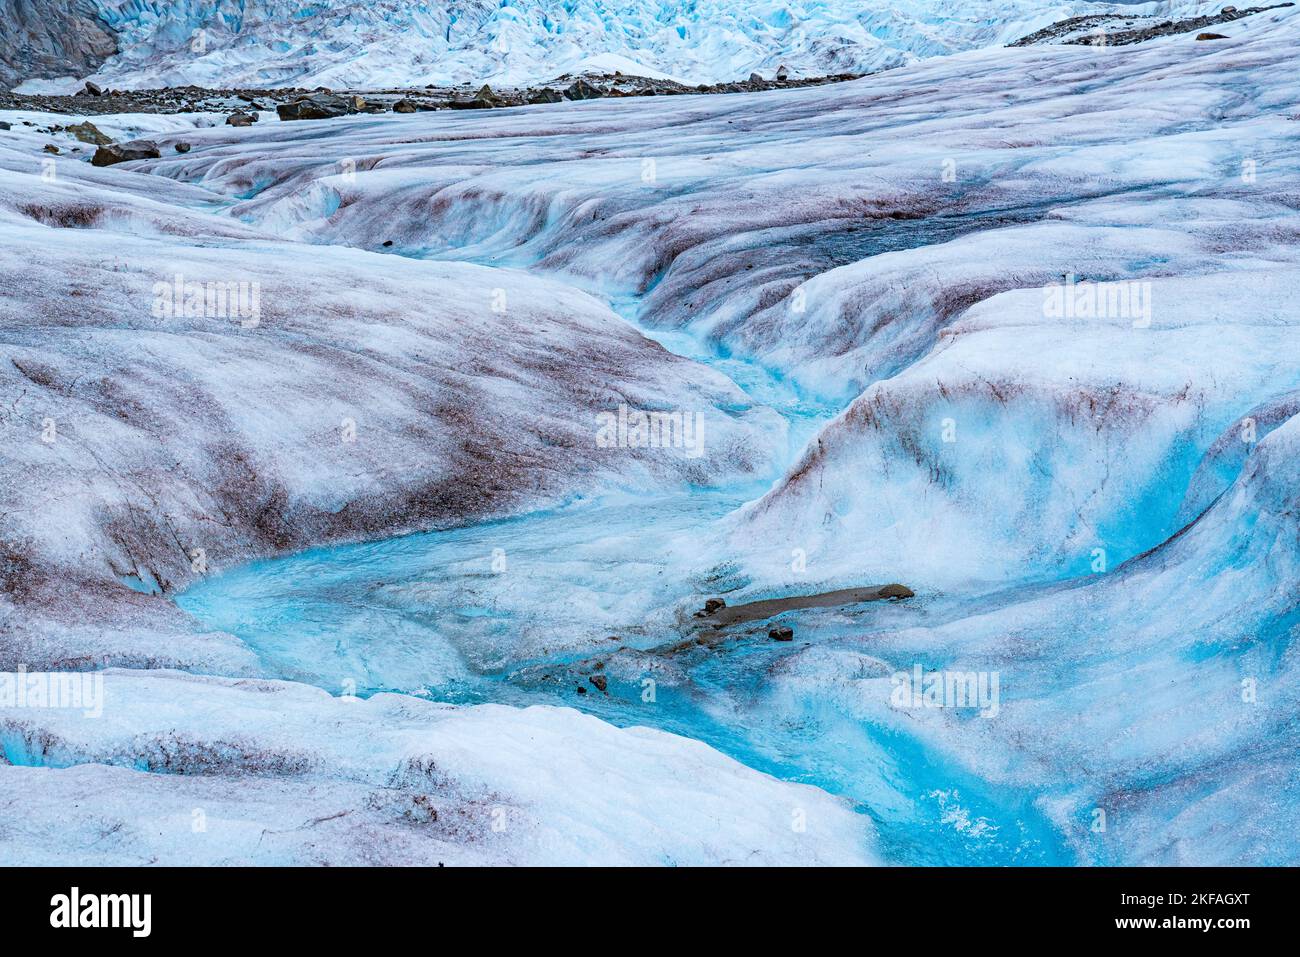 Il ghiaccio fondente del ghiacciaio Mendenhall in Alaska forma un flusso tortuoso di acque cristalline e blu Foto Stock